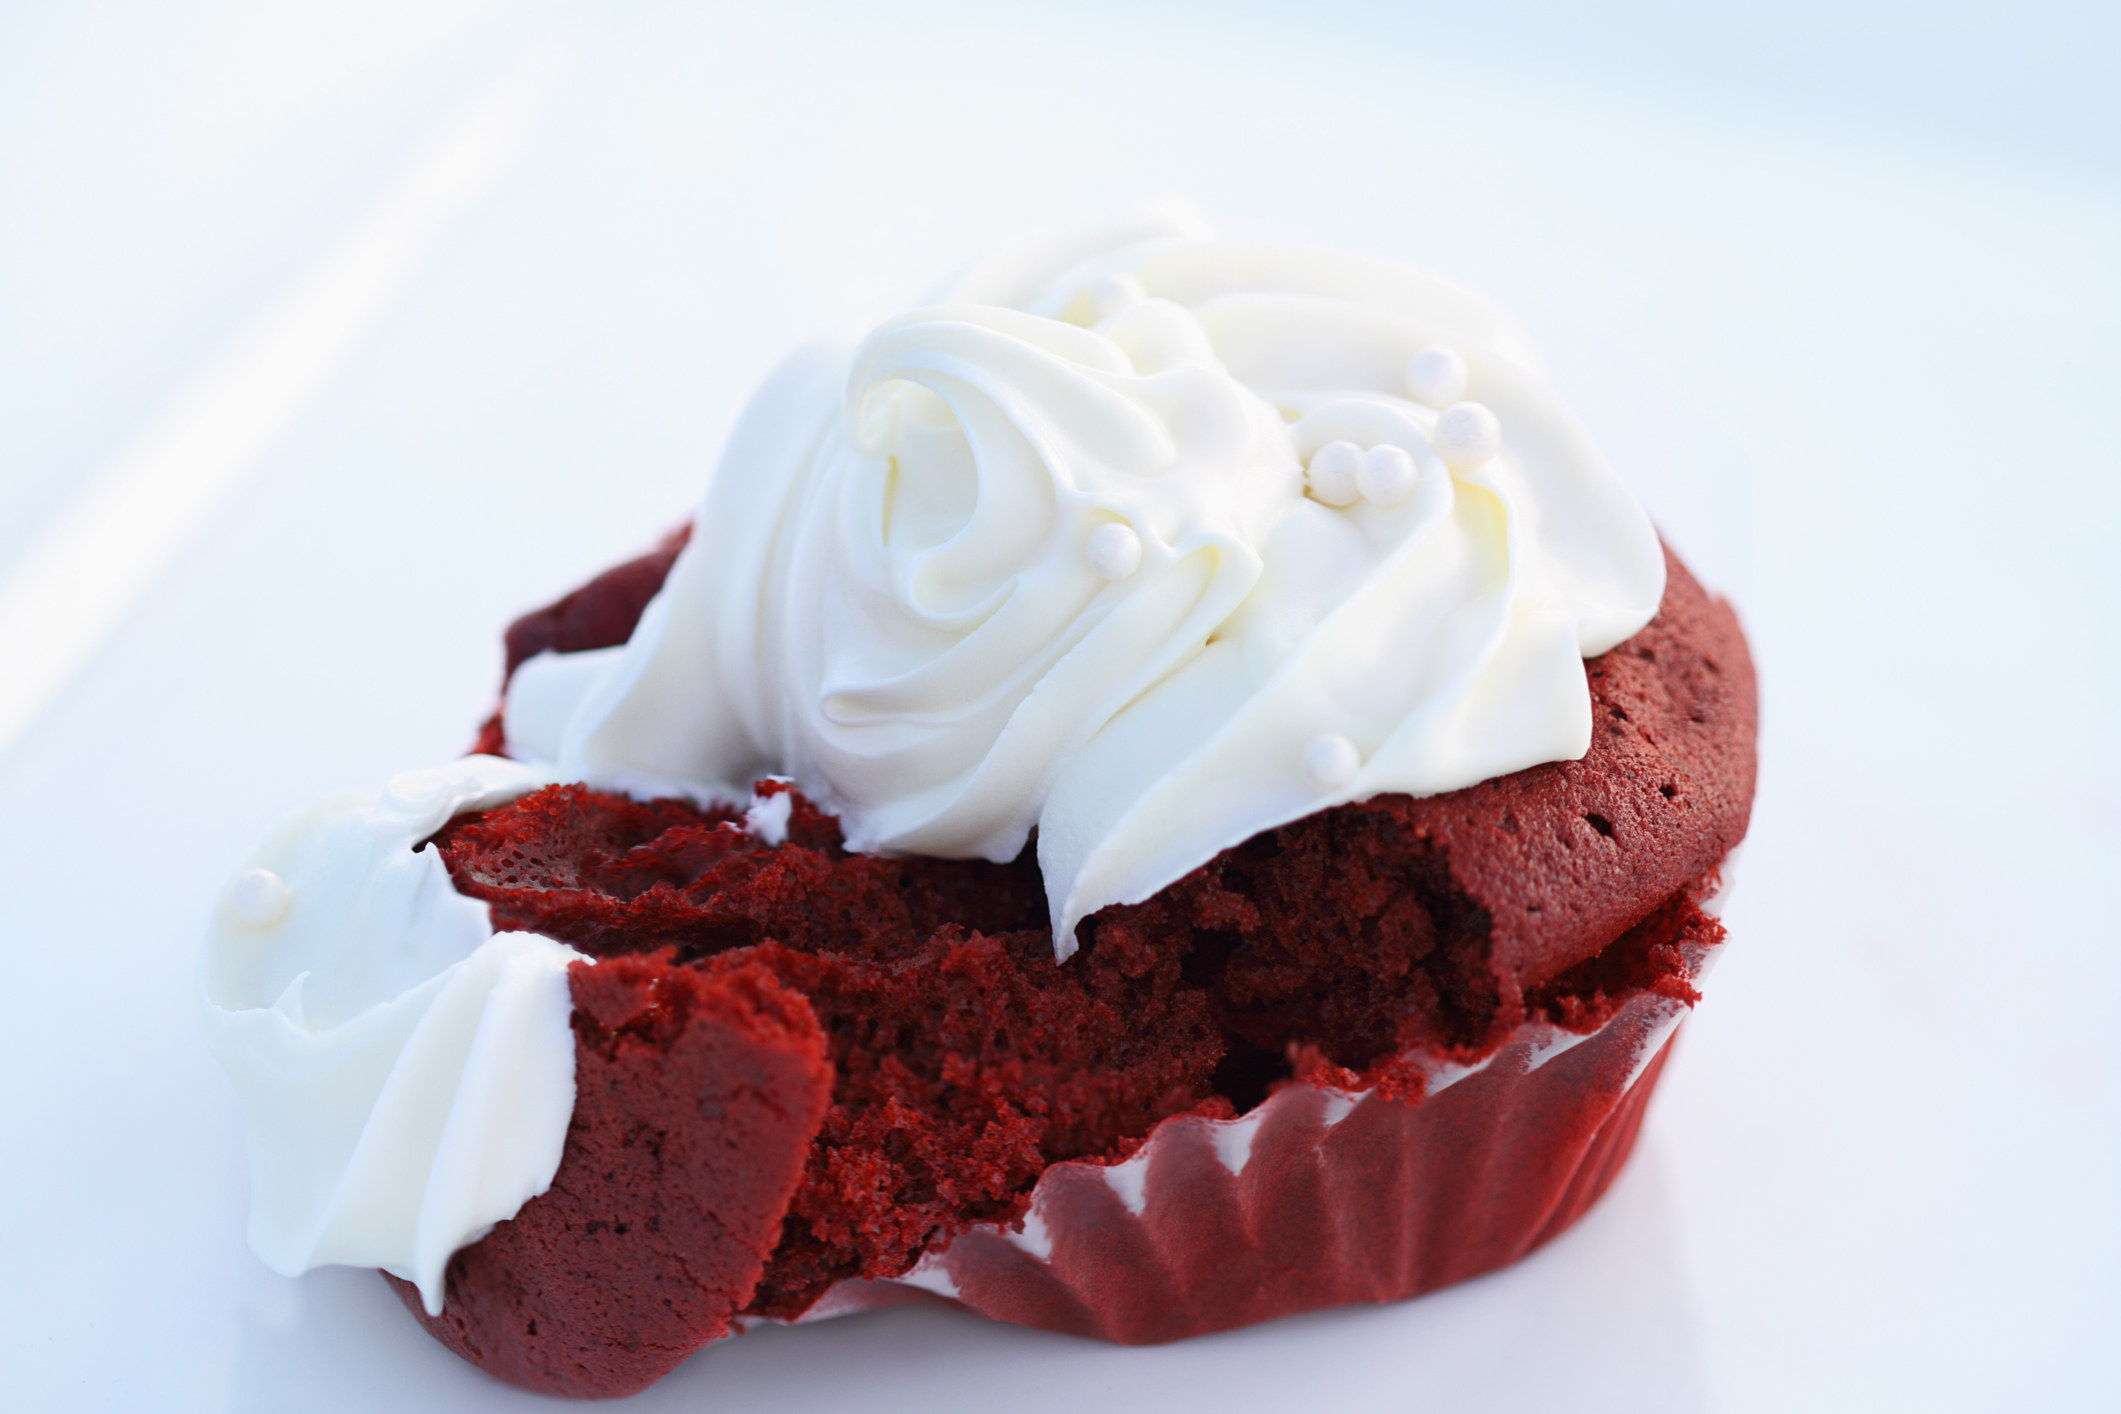 A red velvet cupcake.